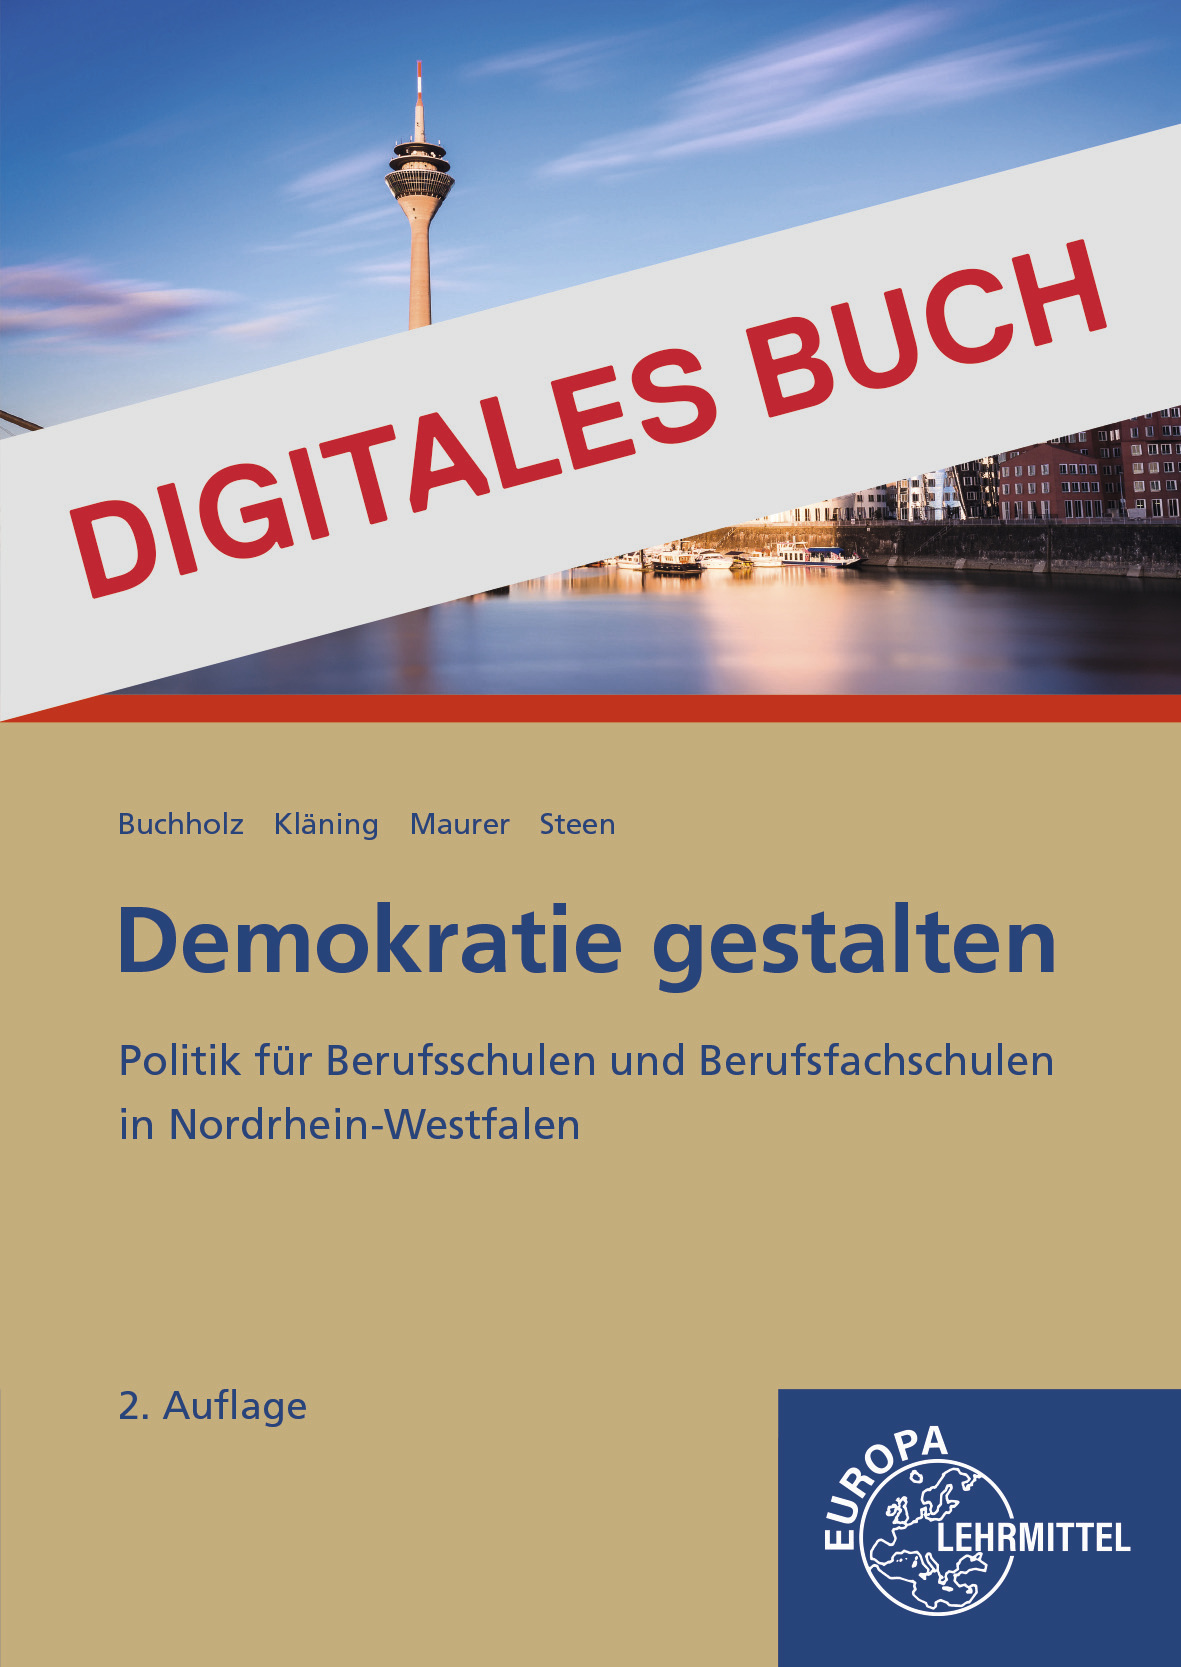 Demokratie gestalten NRW - Digitales Buch